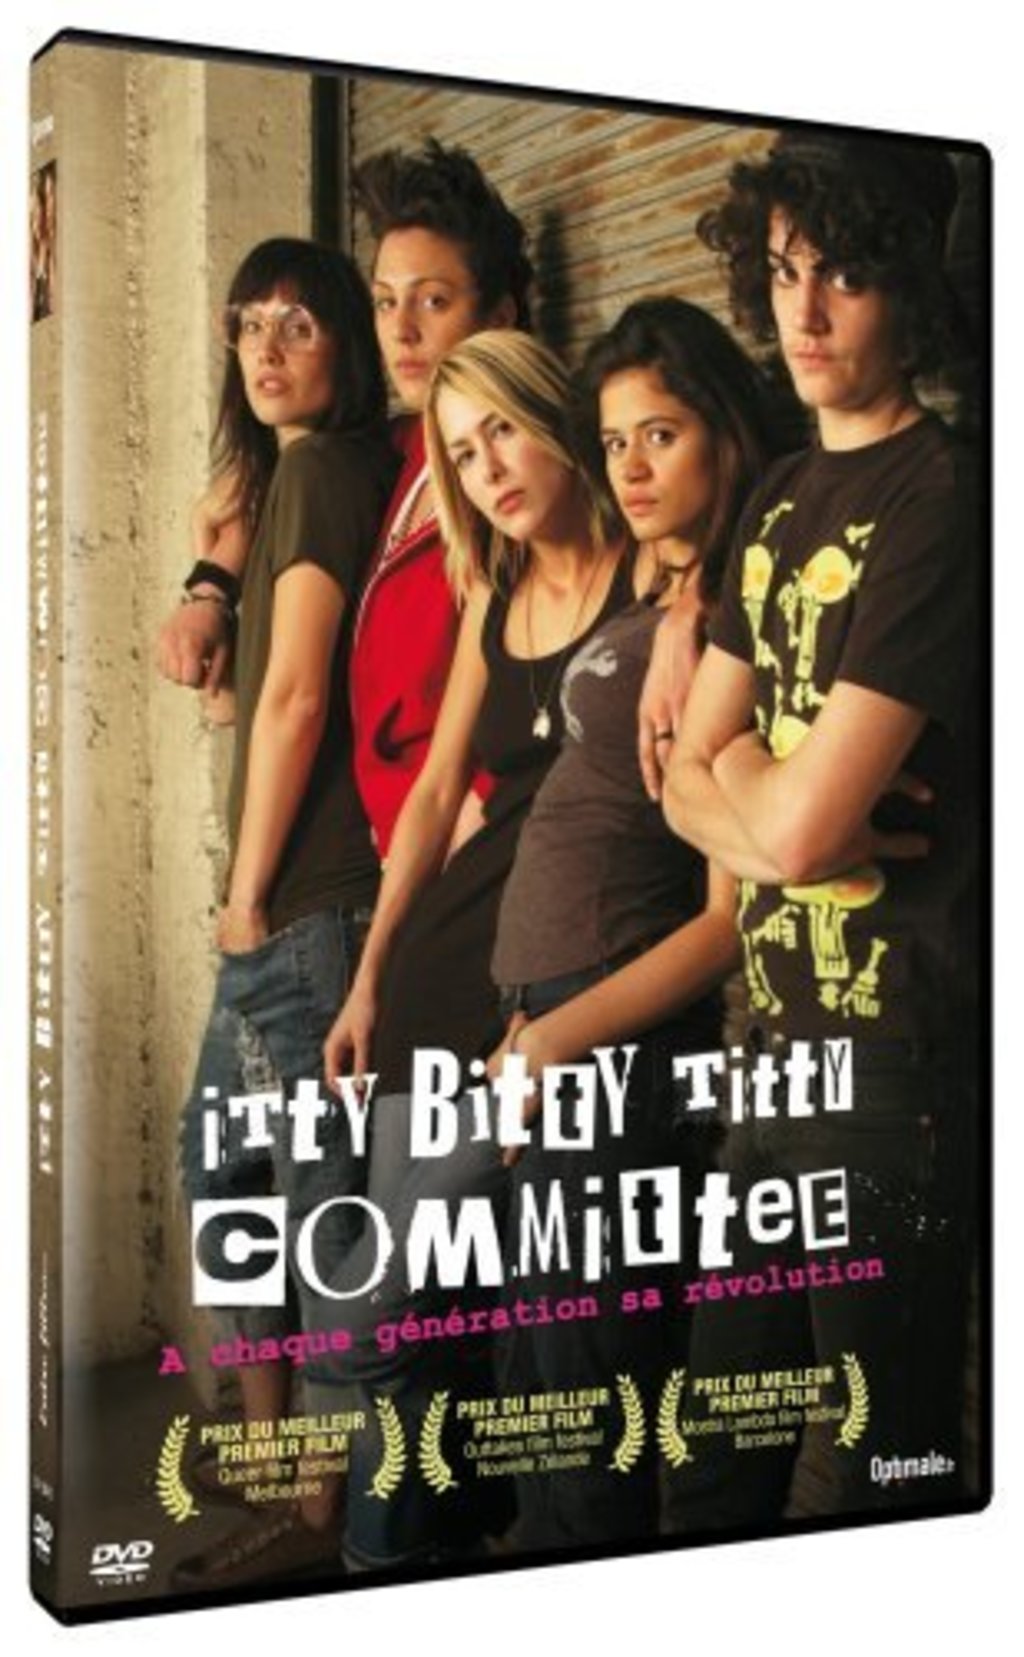 Watch Itty Bitty Titty Committee on Netflix Today! NetflixMo